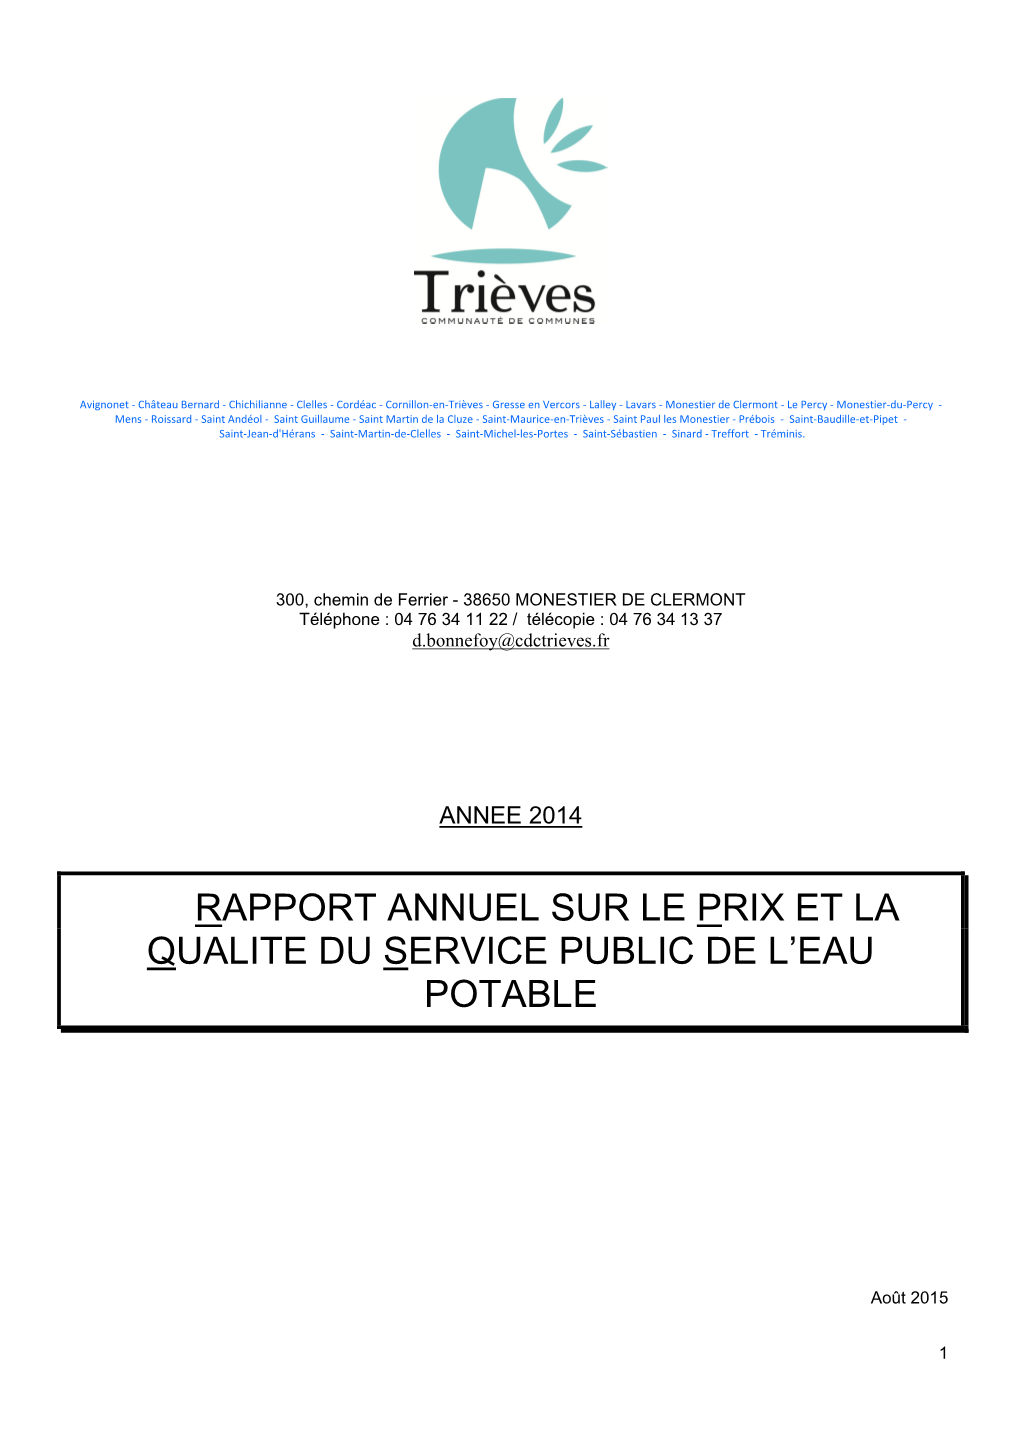 Rapport Annuel Sur Le Prix Et La Qualite Du Service Public De L’Eau Potable